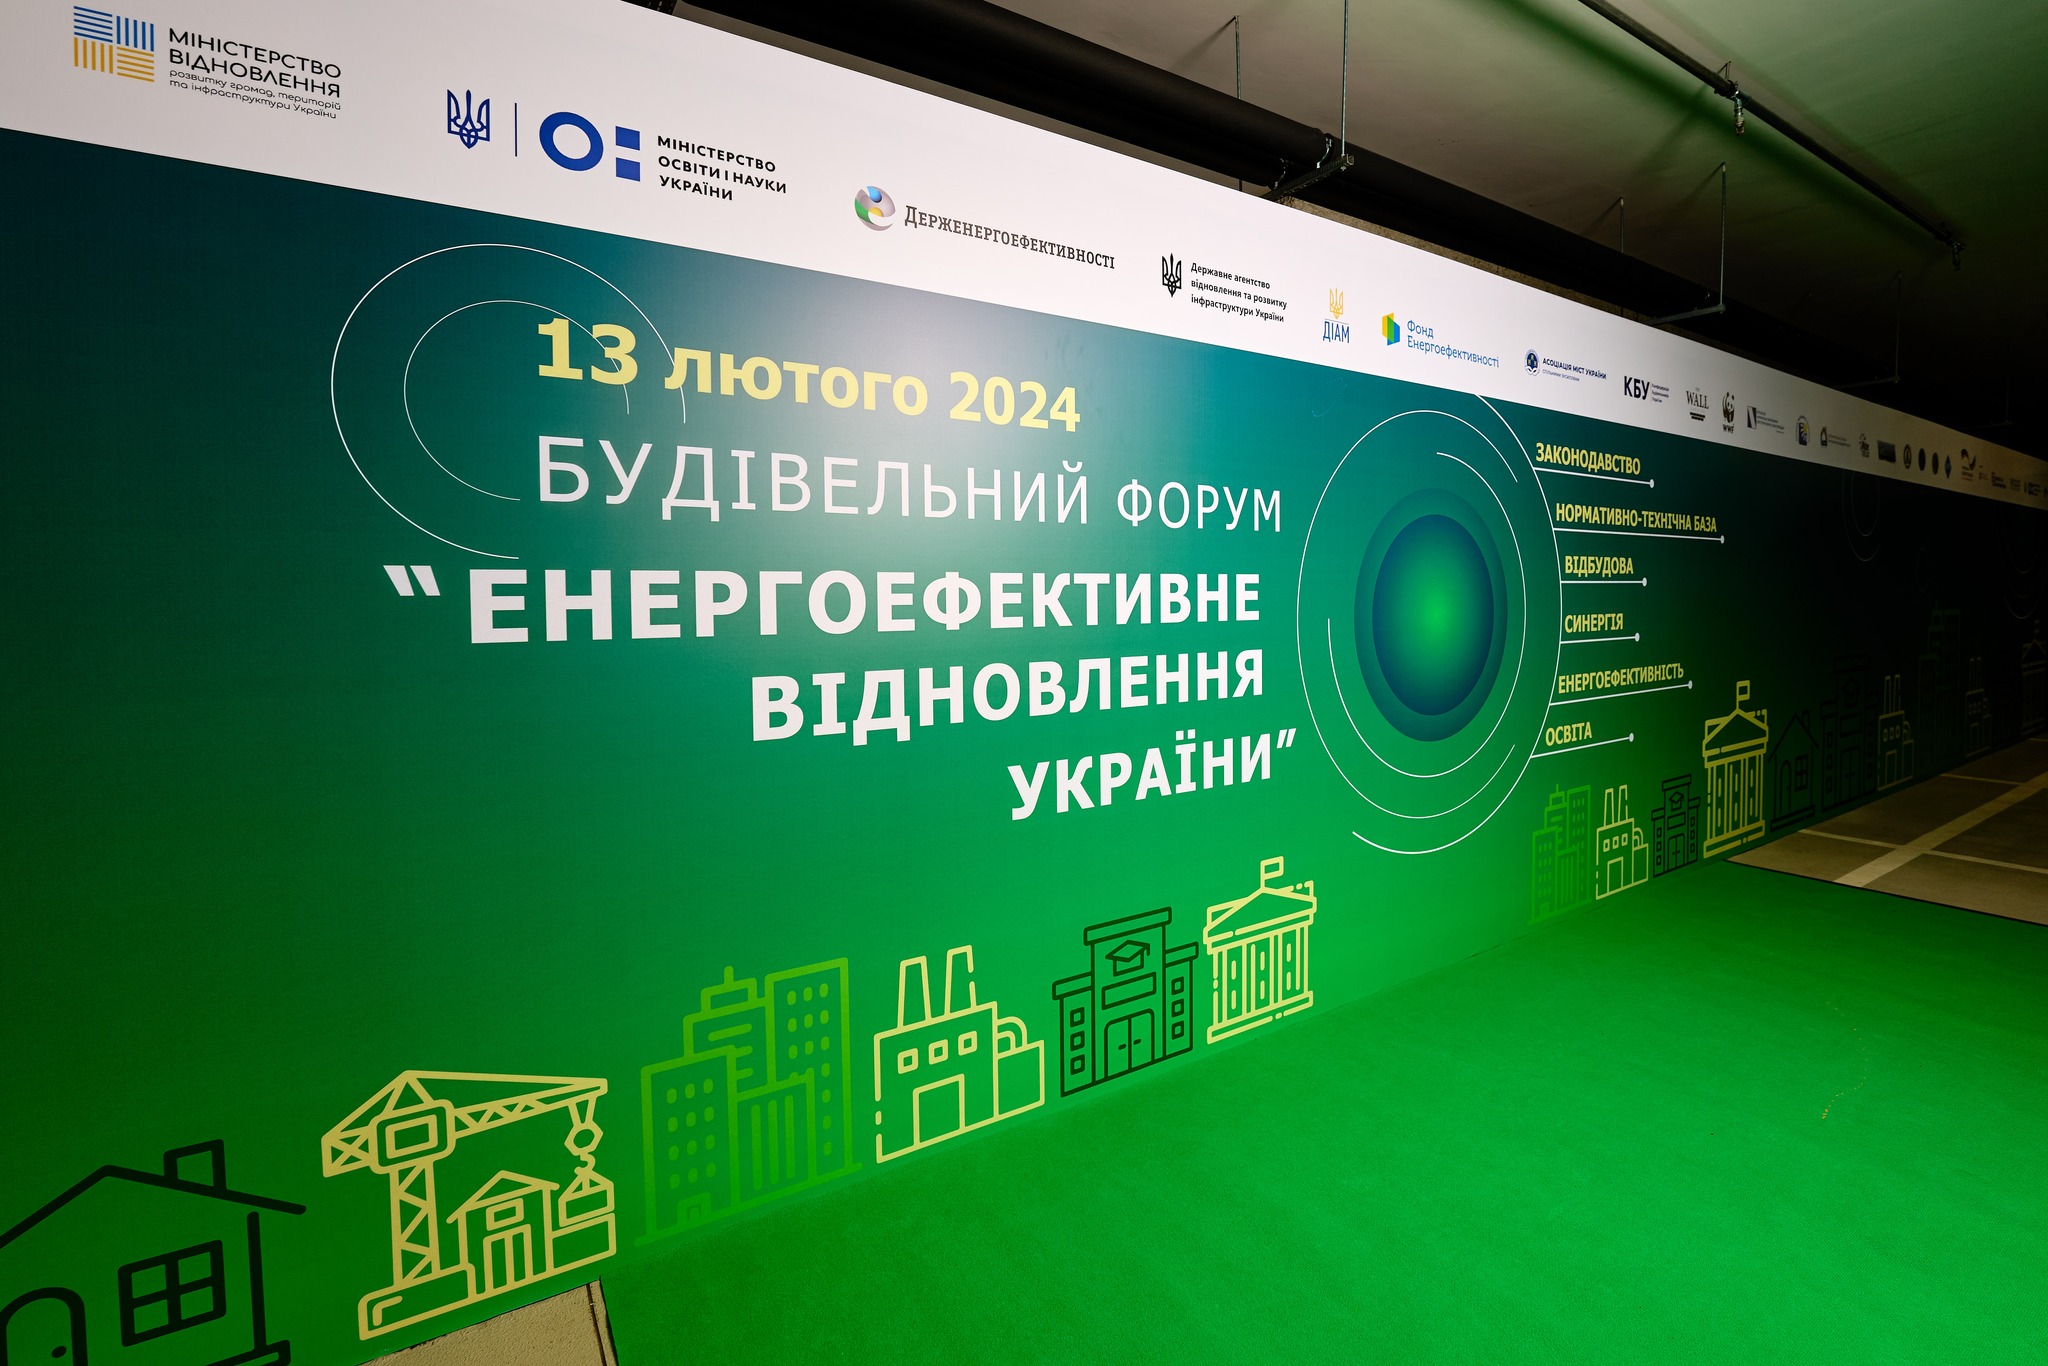 Будівельний форум “Енергоефективне відновлення України”. Асоціація “Виробники Пінопласту” України виступила партнером та прийняла участь у форумі.